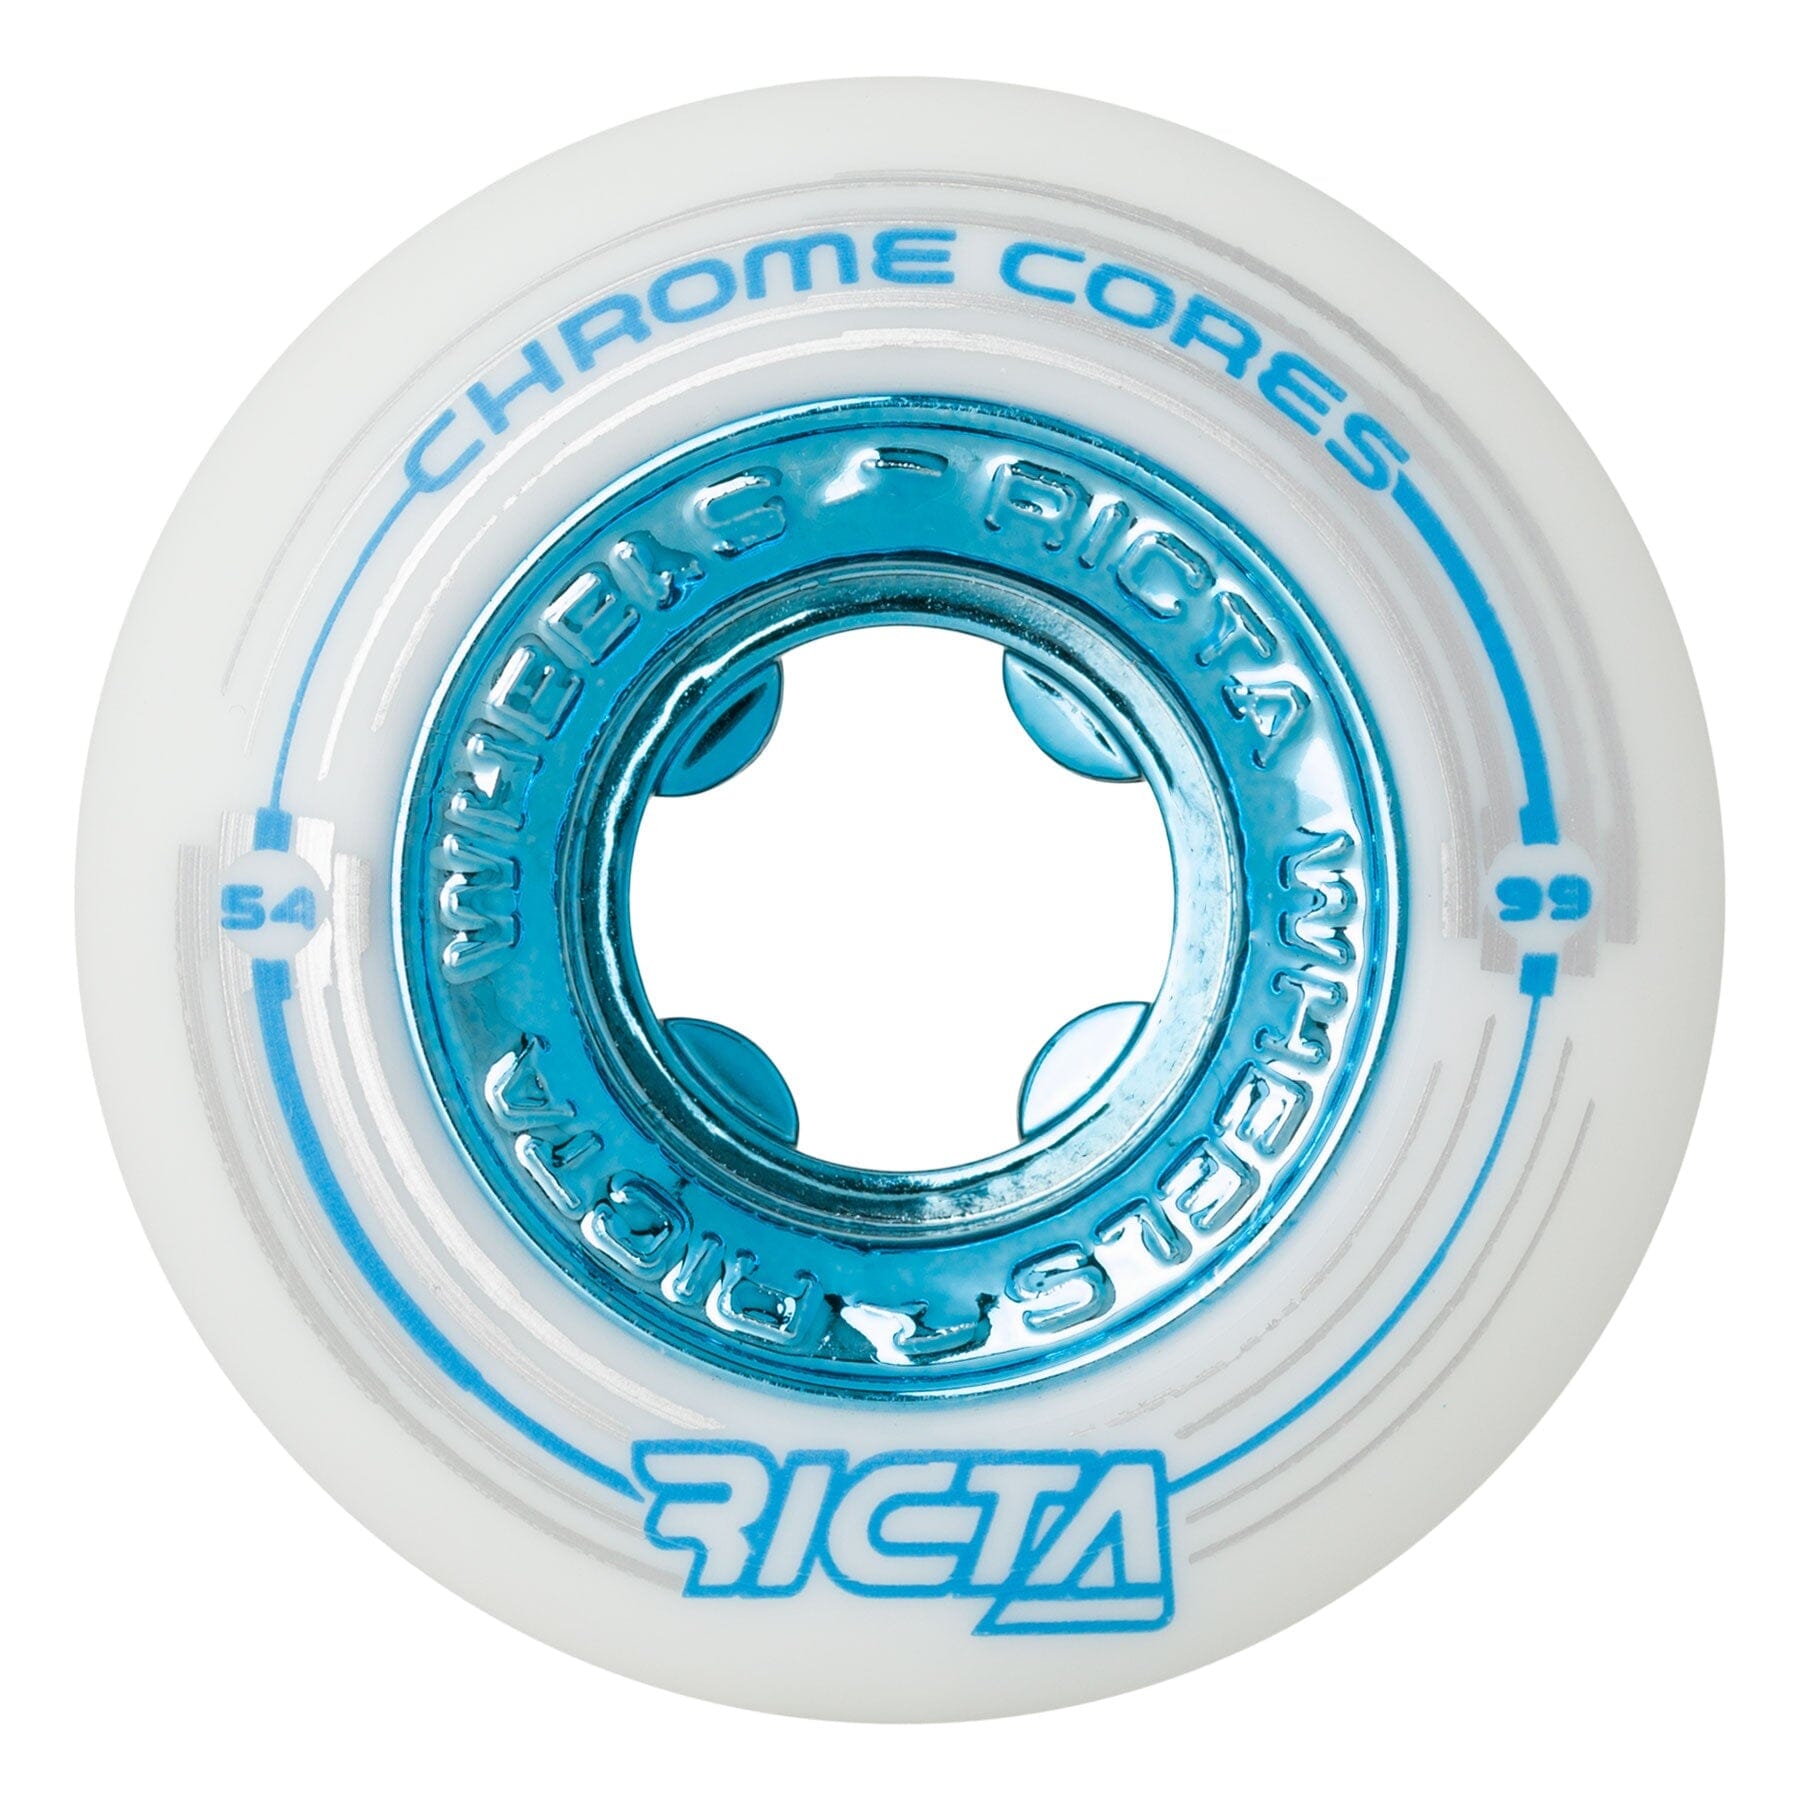 Ricta Chrome Core White Wheels 99A 53MM wheels Ricta 